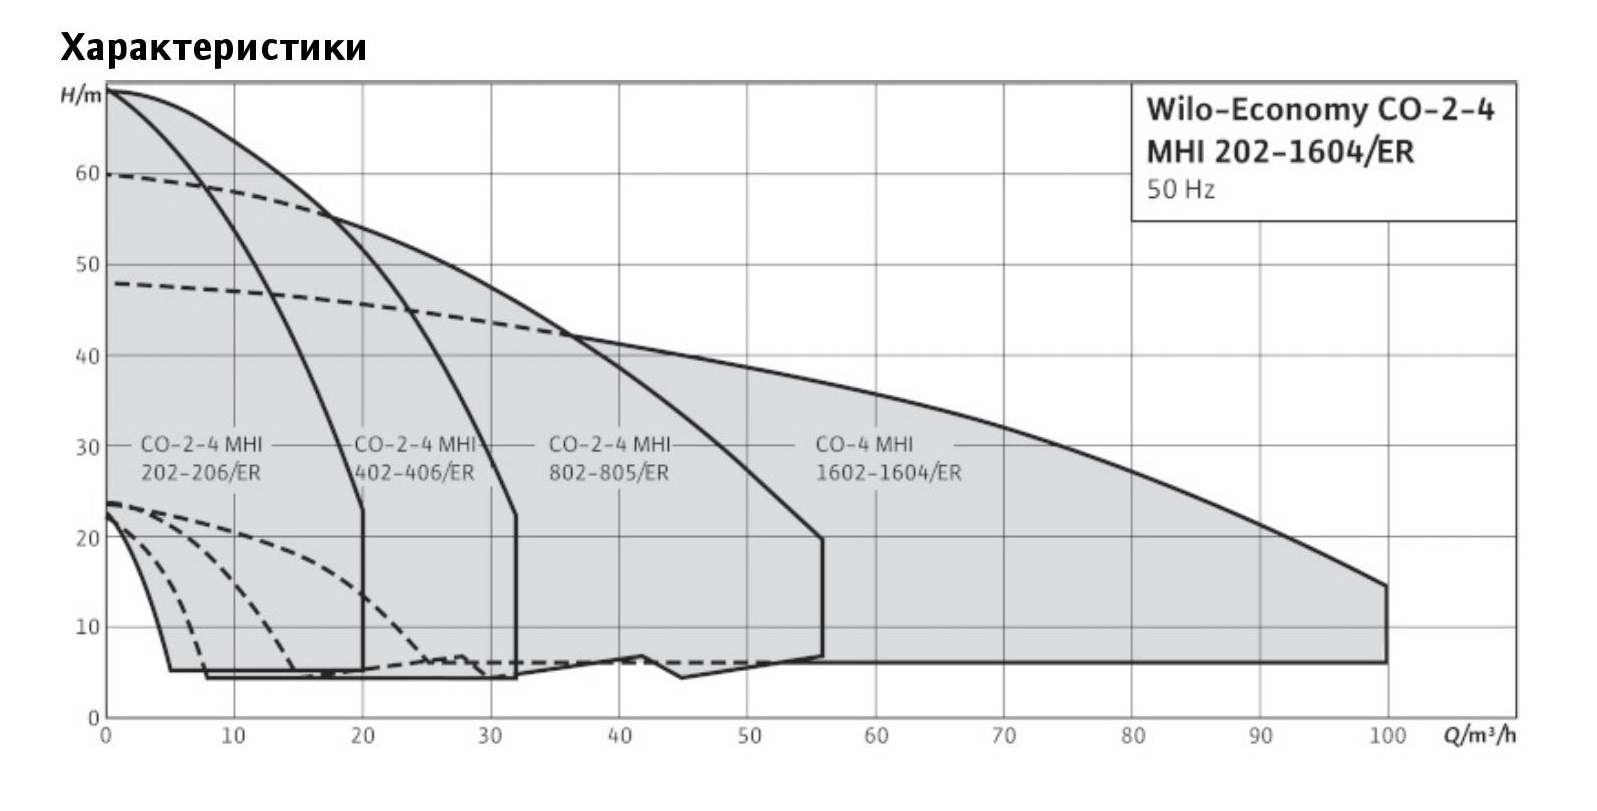 Насосная установка Wilo Economy CO-2 MHI 1603/ER-EB график